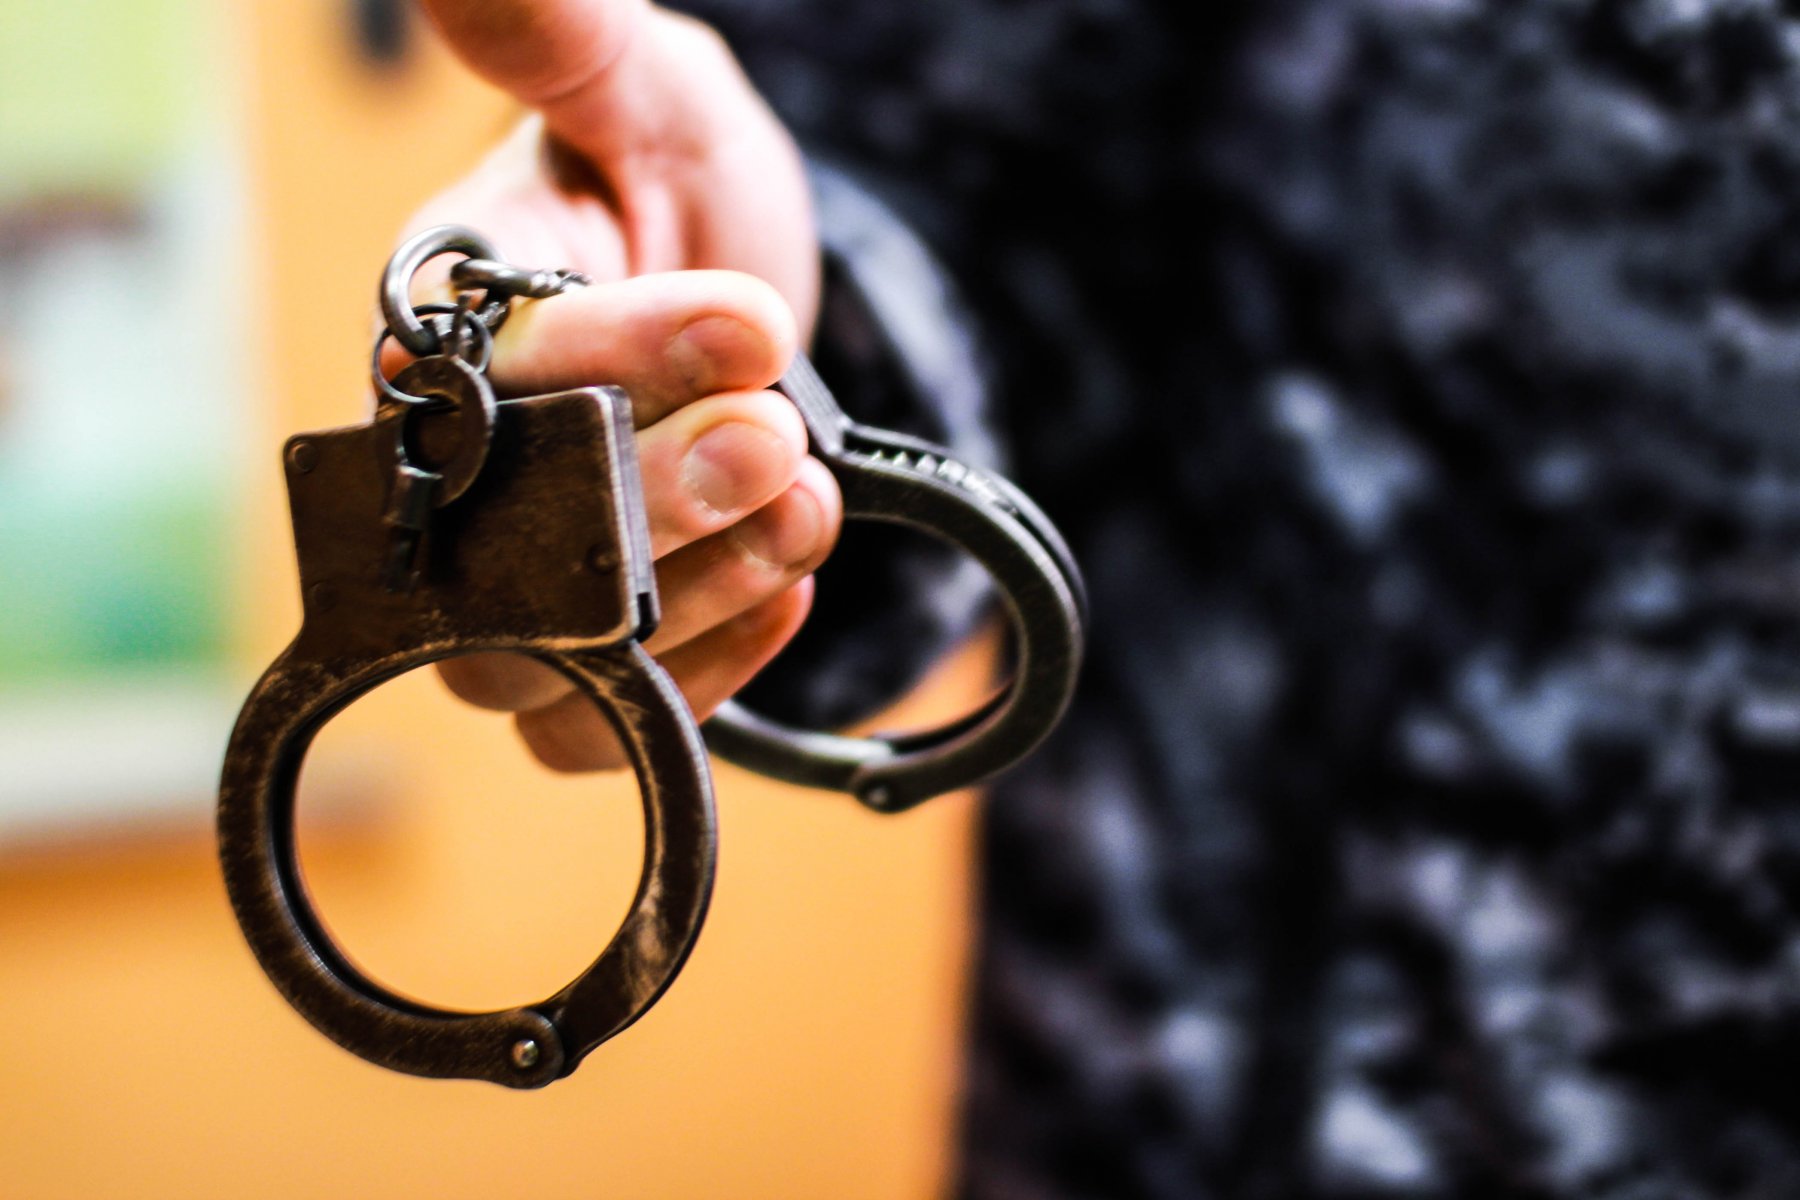 Задержан ломившийся в дверь квартиры супруги военкора Александра Коца мужчина: возбуждено уголовное дело 